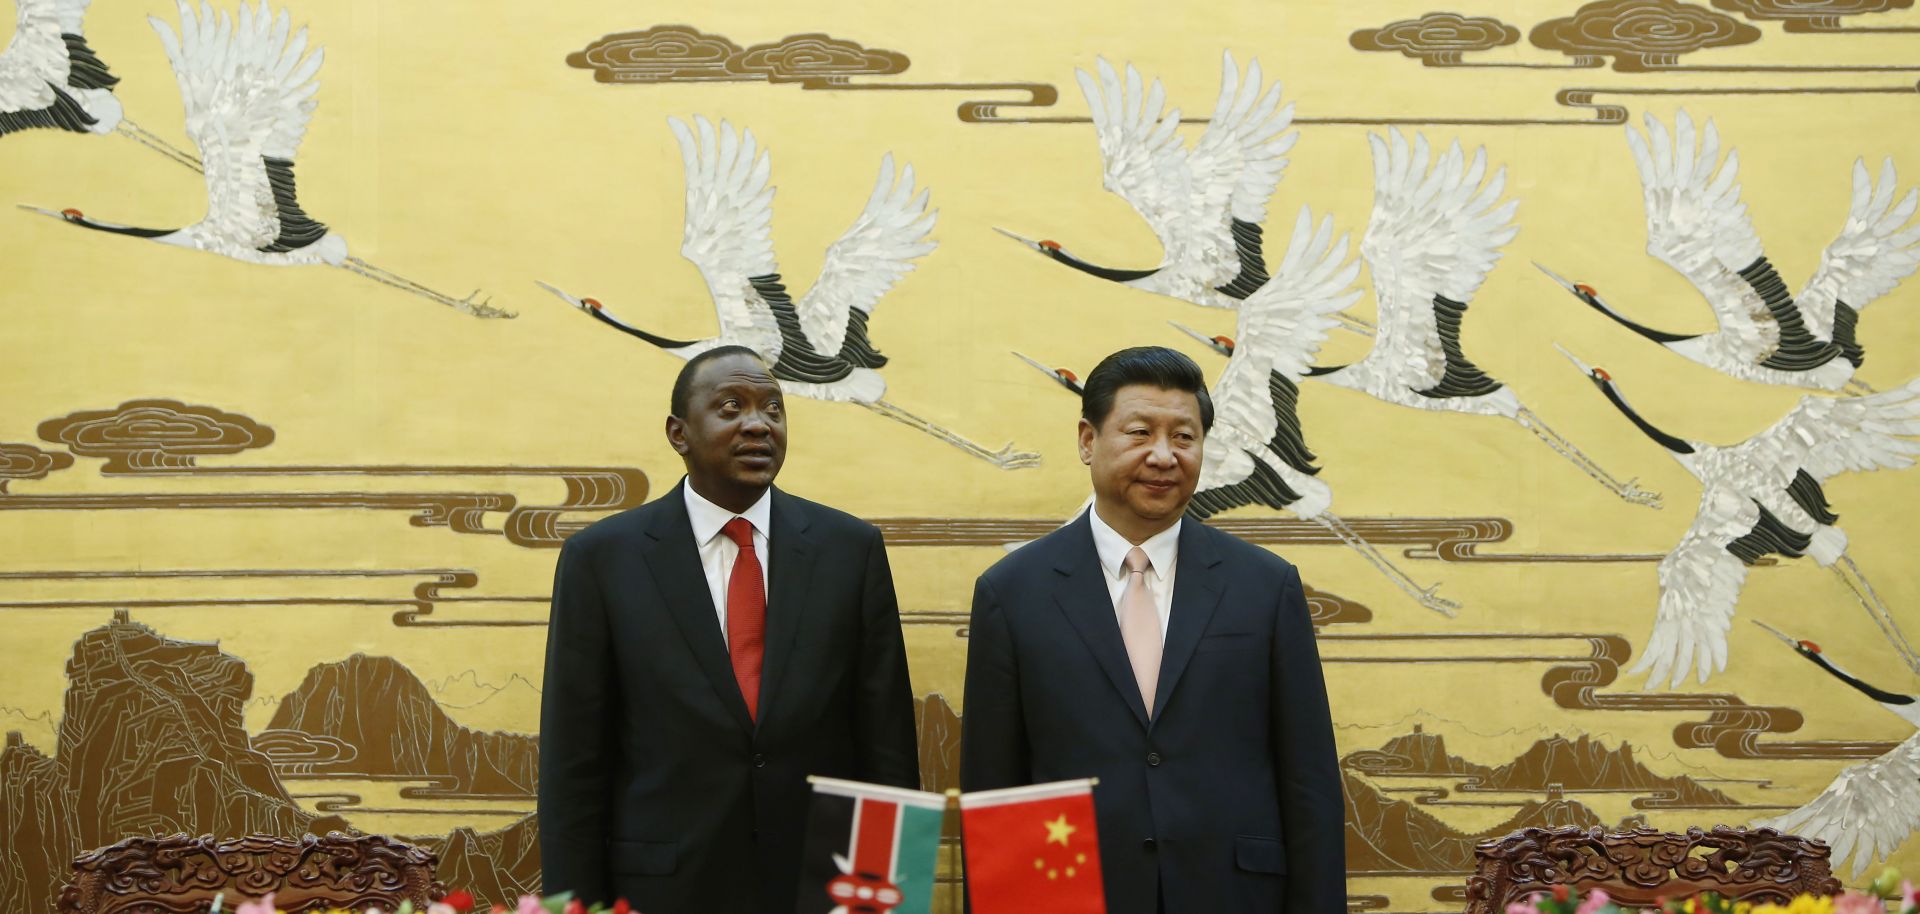 Kenyan President Uhuru Kenyatta and his Chinese President Xi Jinping stand during a signing ceremony.